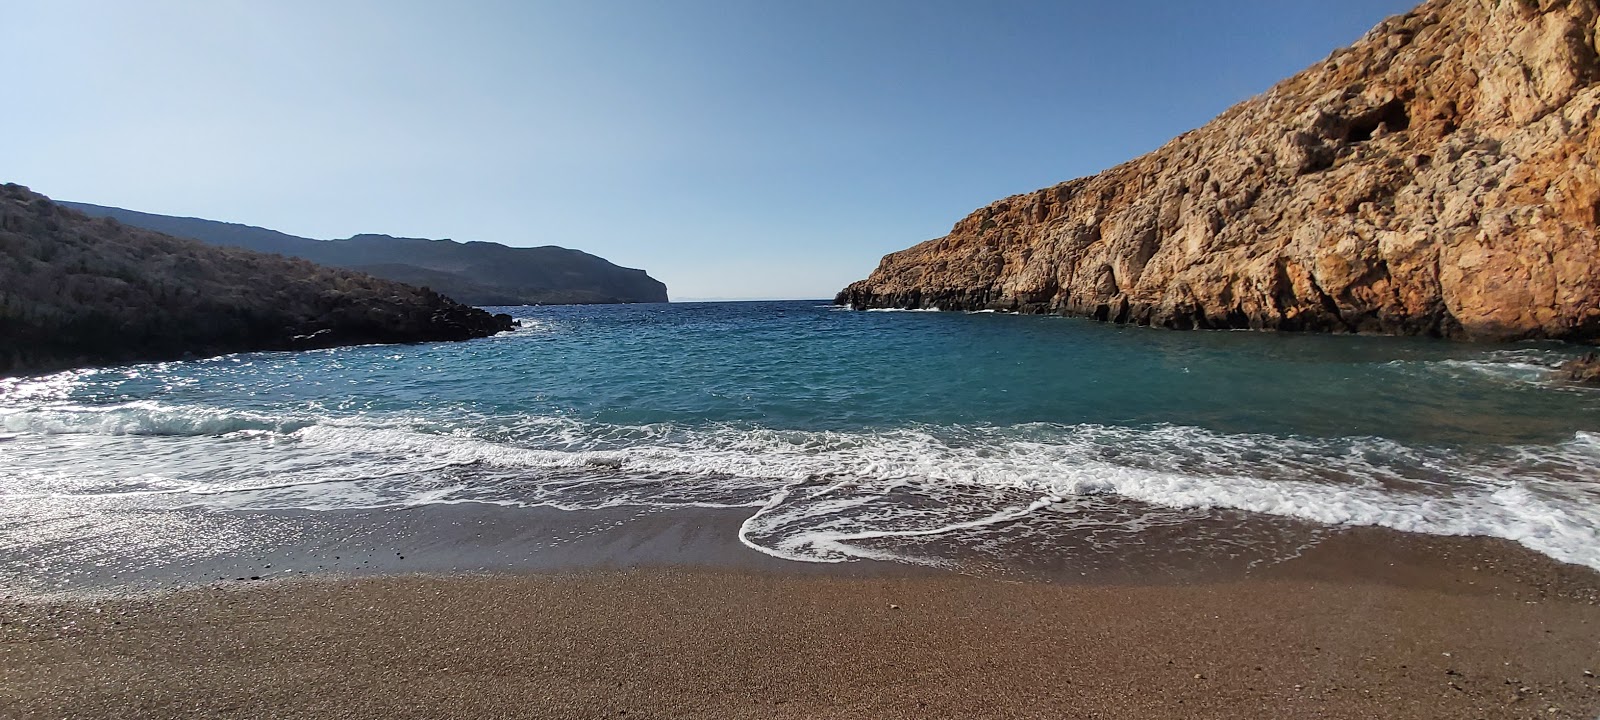 Foto von Xiropotamos beach und seine wunderschöne Landschaft